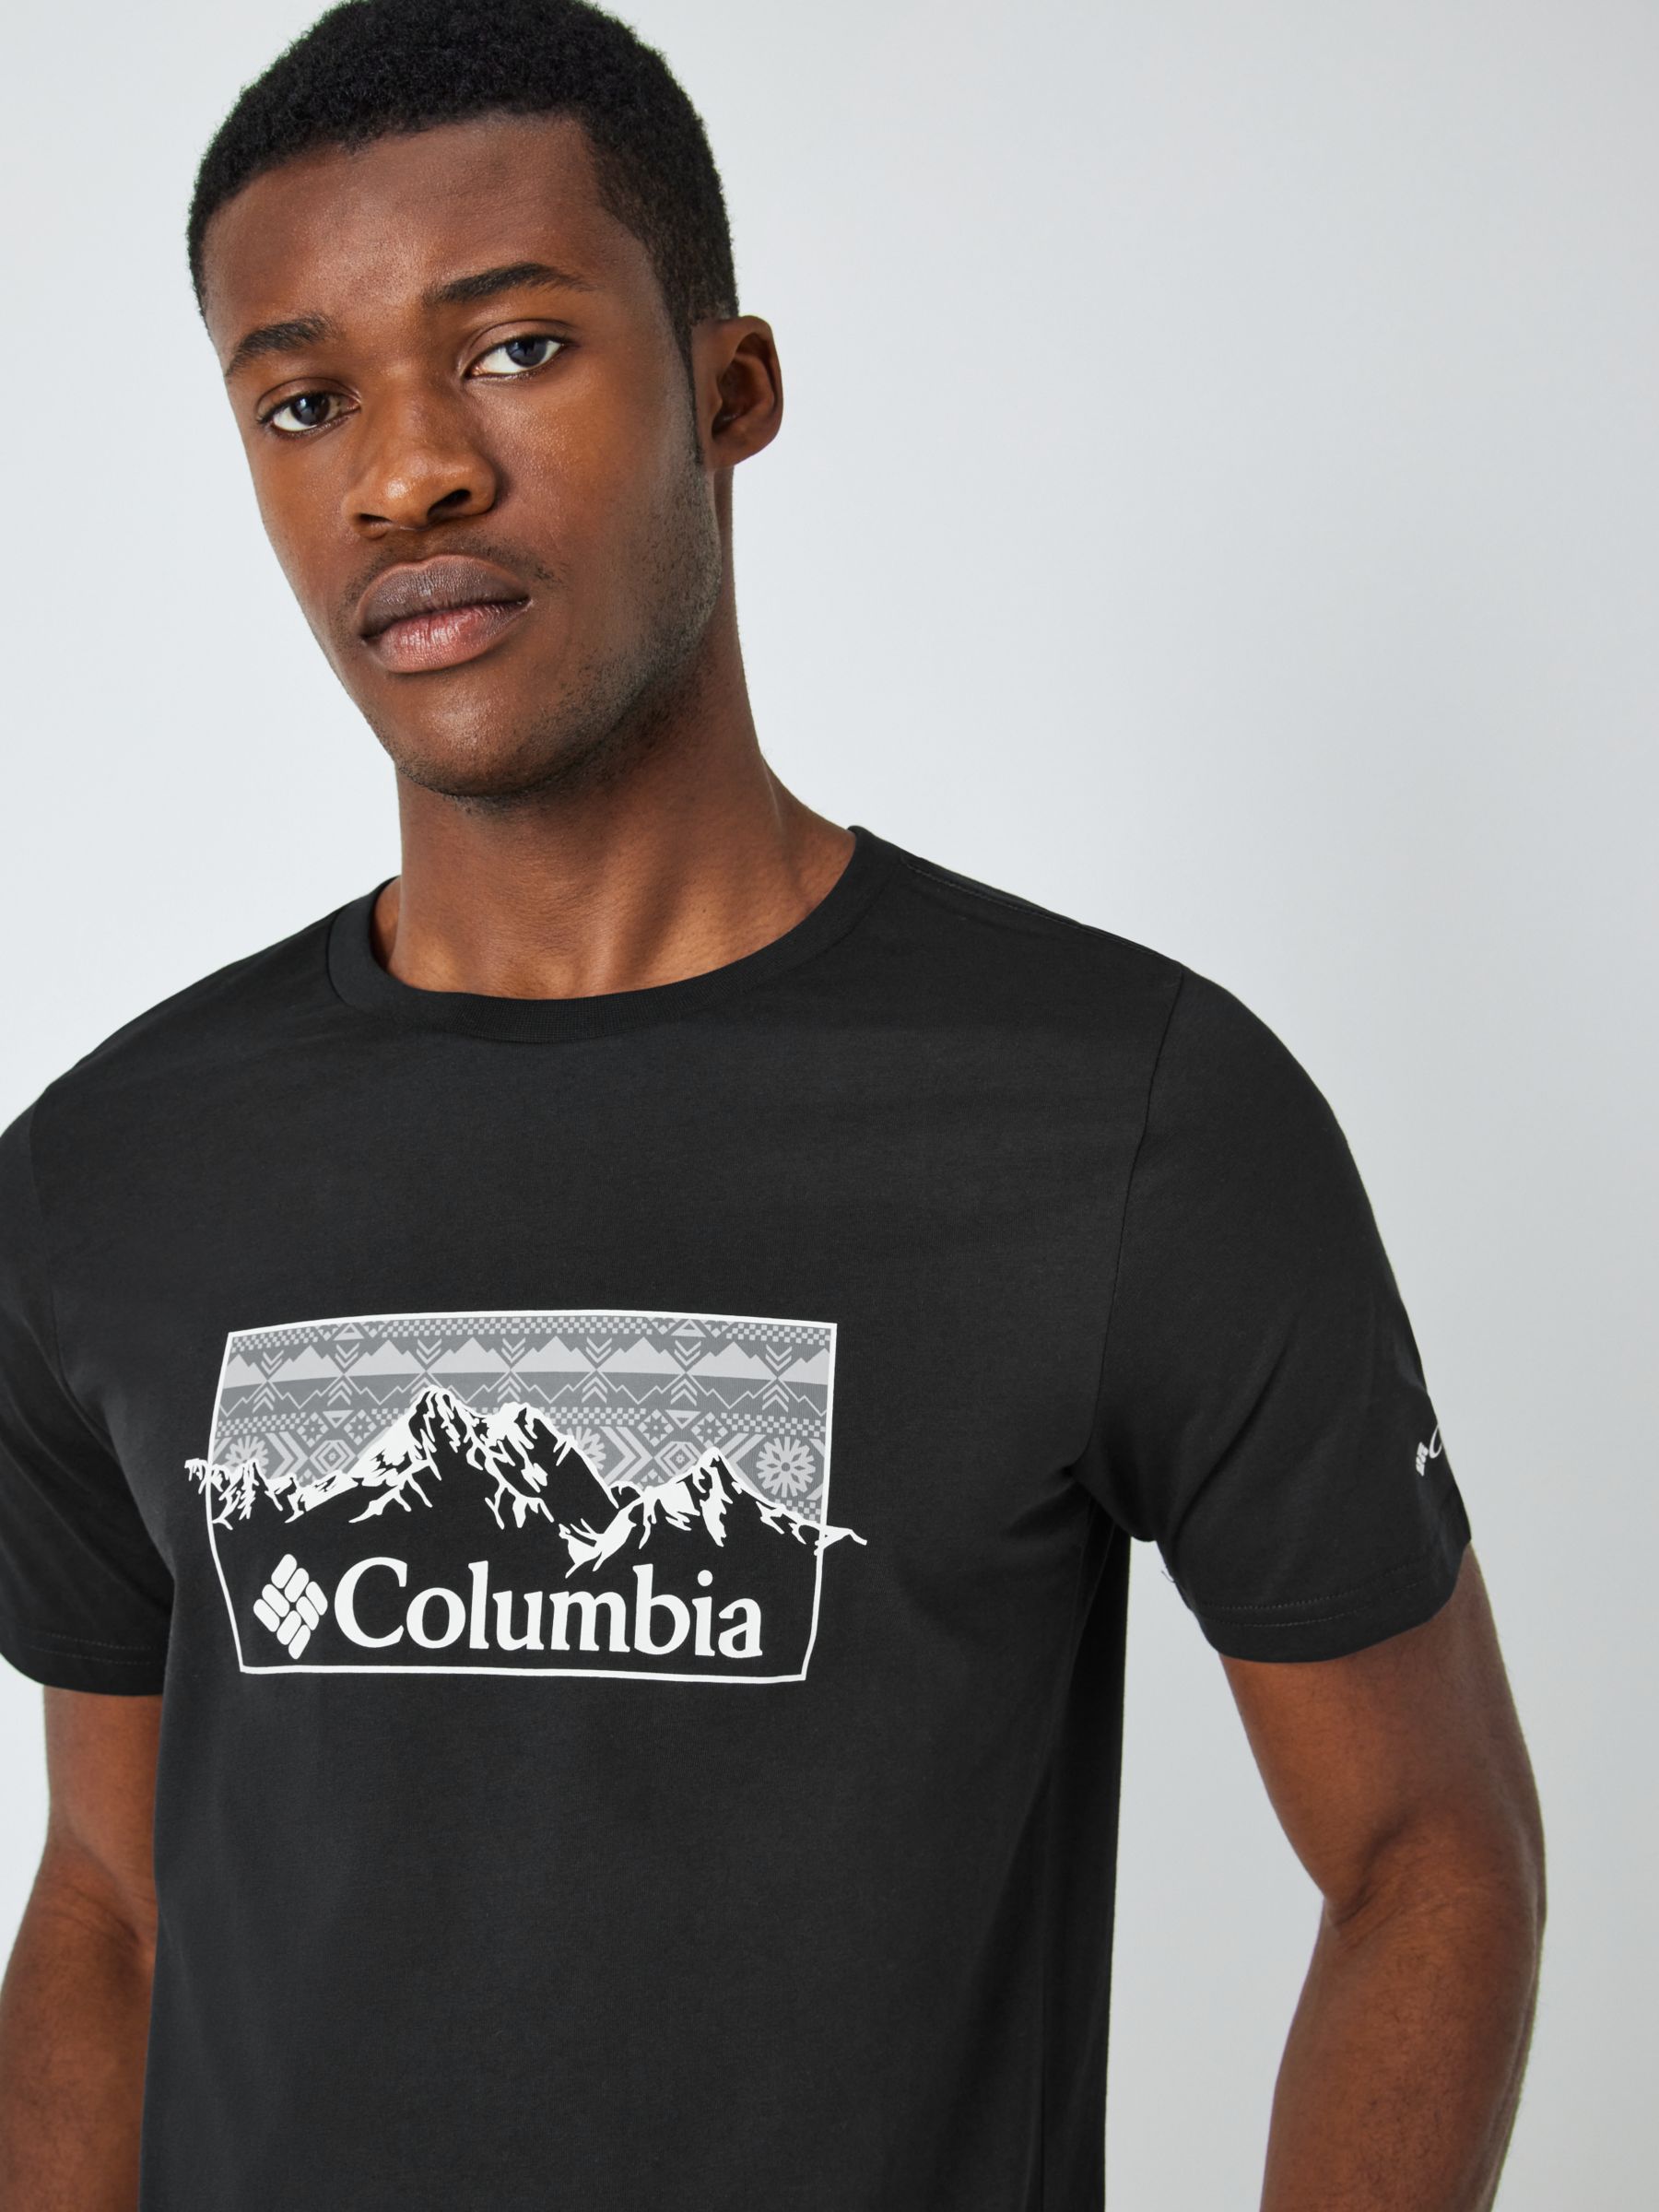 Columbia Graphic Organic Cotton T-Shirt, Black/White at John Lewis ...